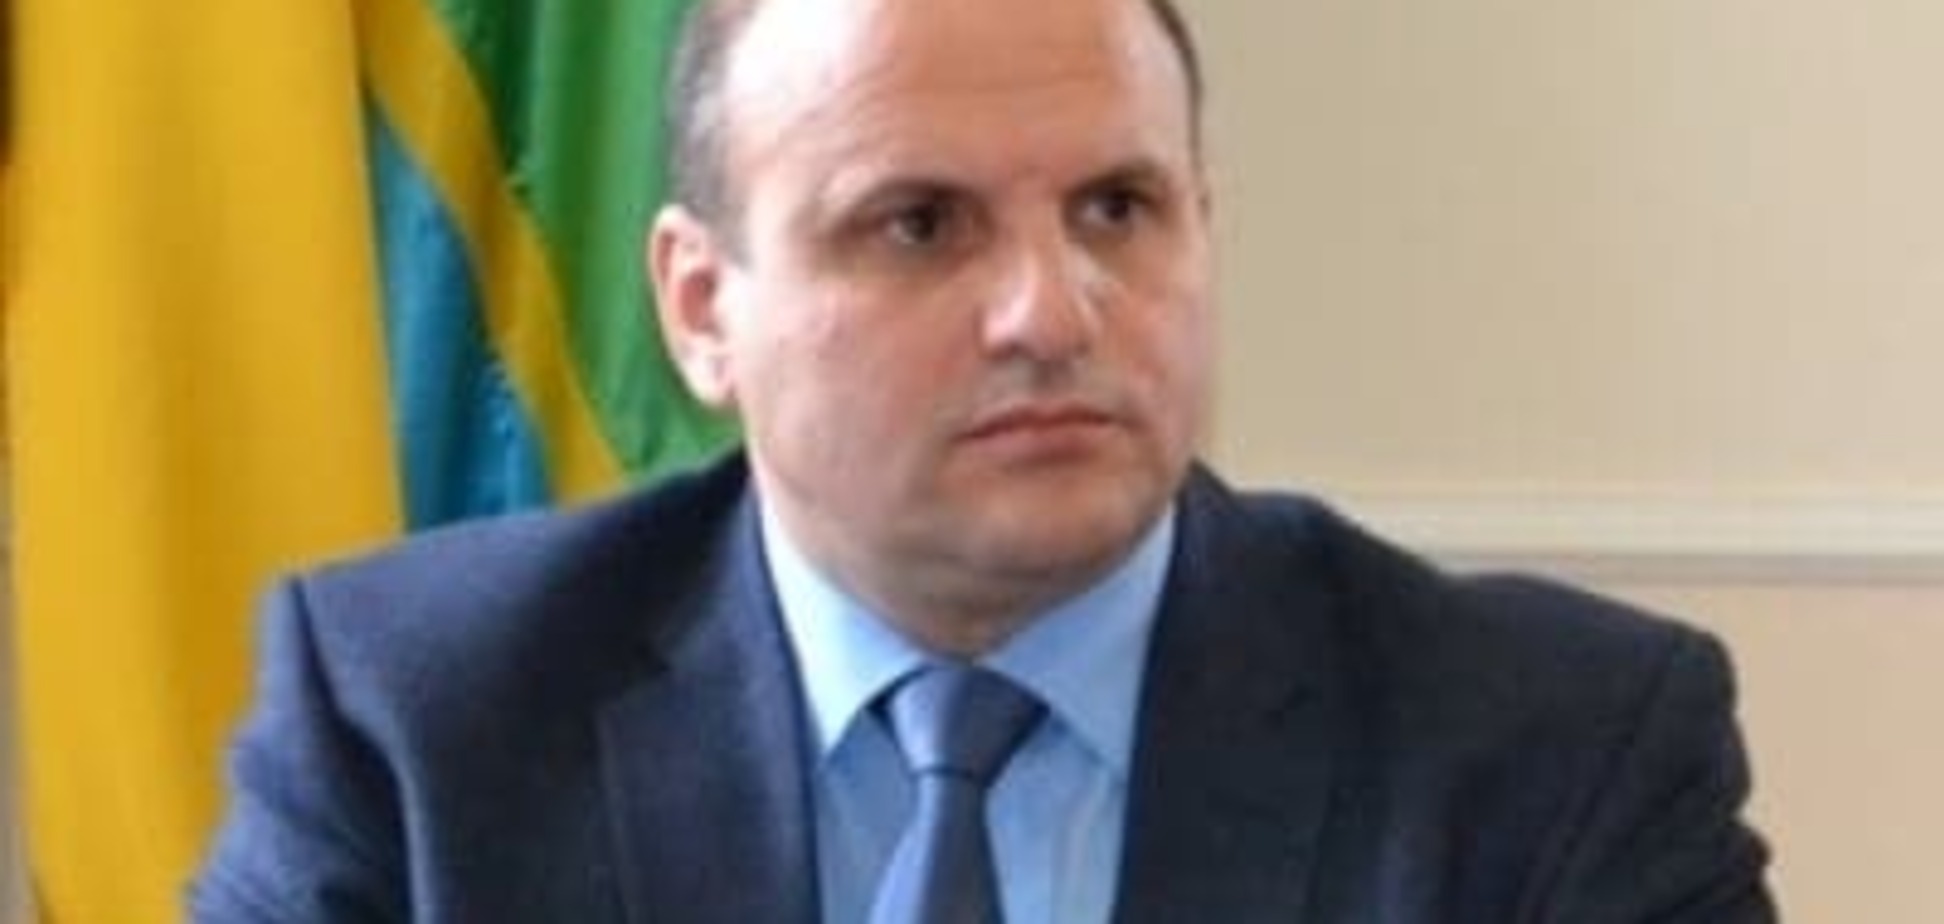 'Не ведіться': голова облради розповів про прохання румунів Буковини про автономію